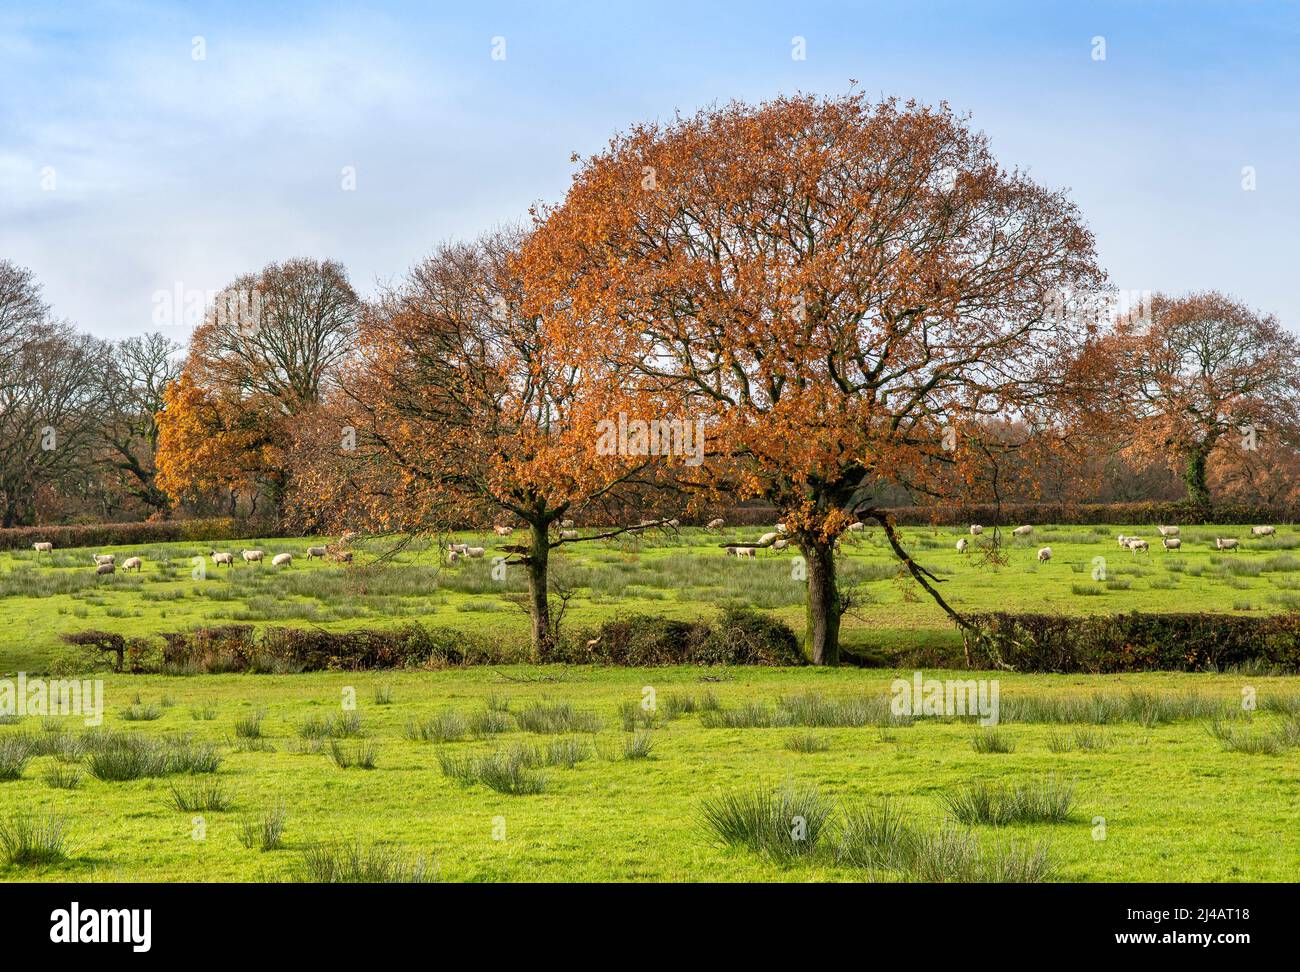 Hermosa escena rural de otoño en Gales del Sur, Reino Unido con ovejas pastando en el fondo Foto de stock